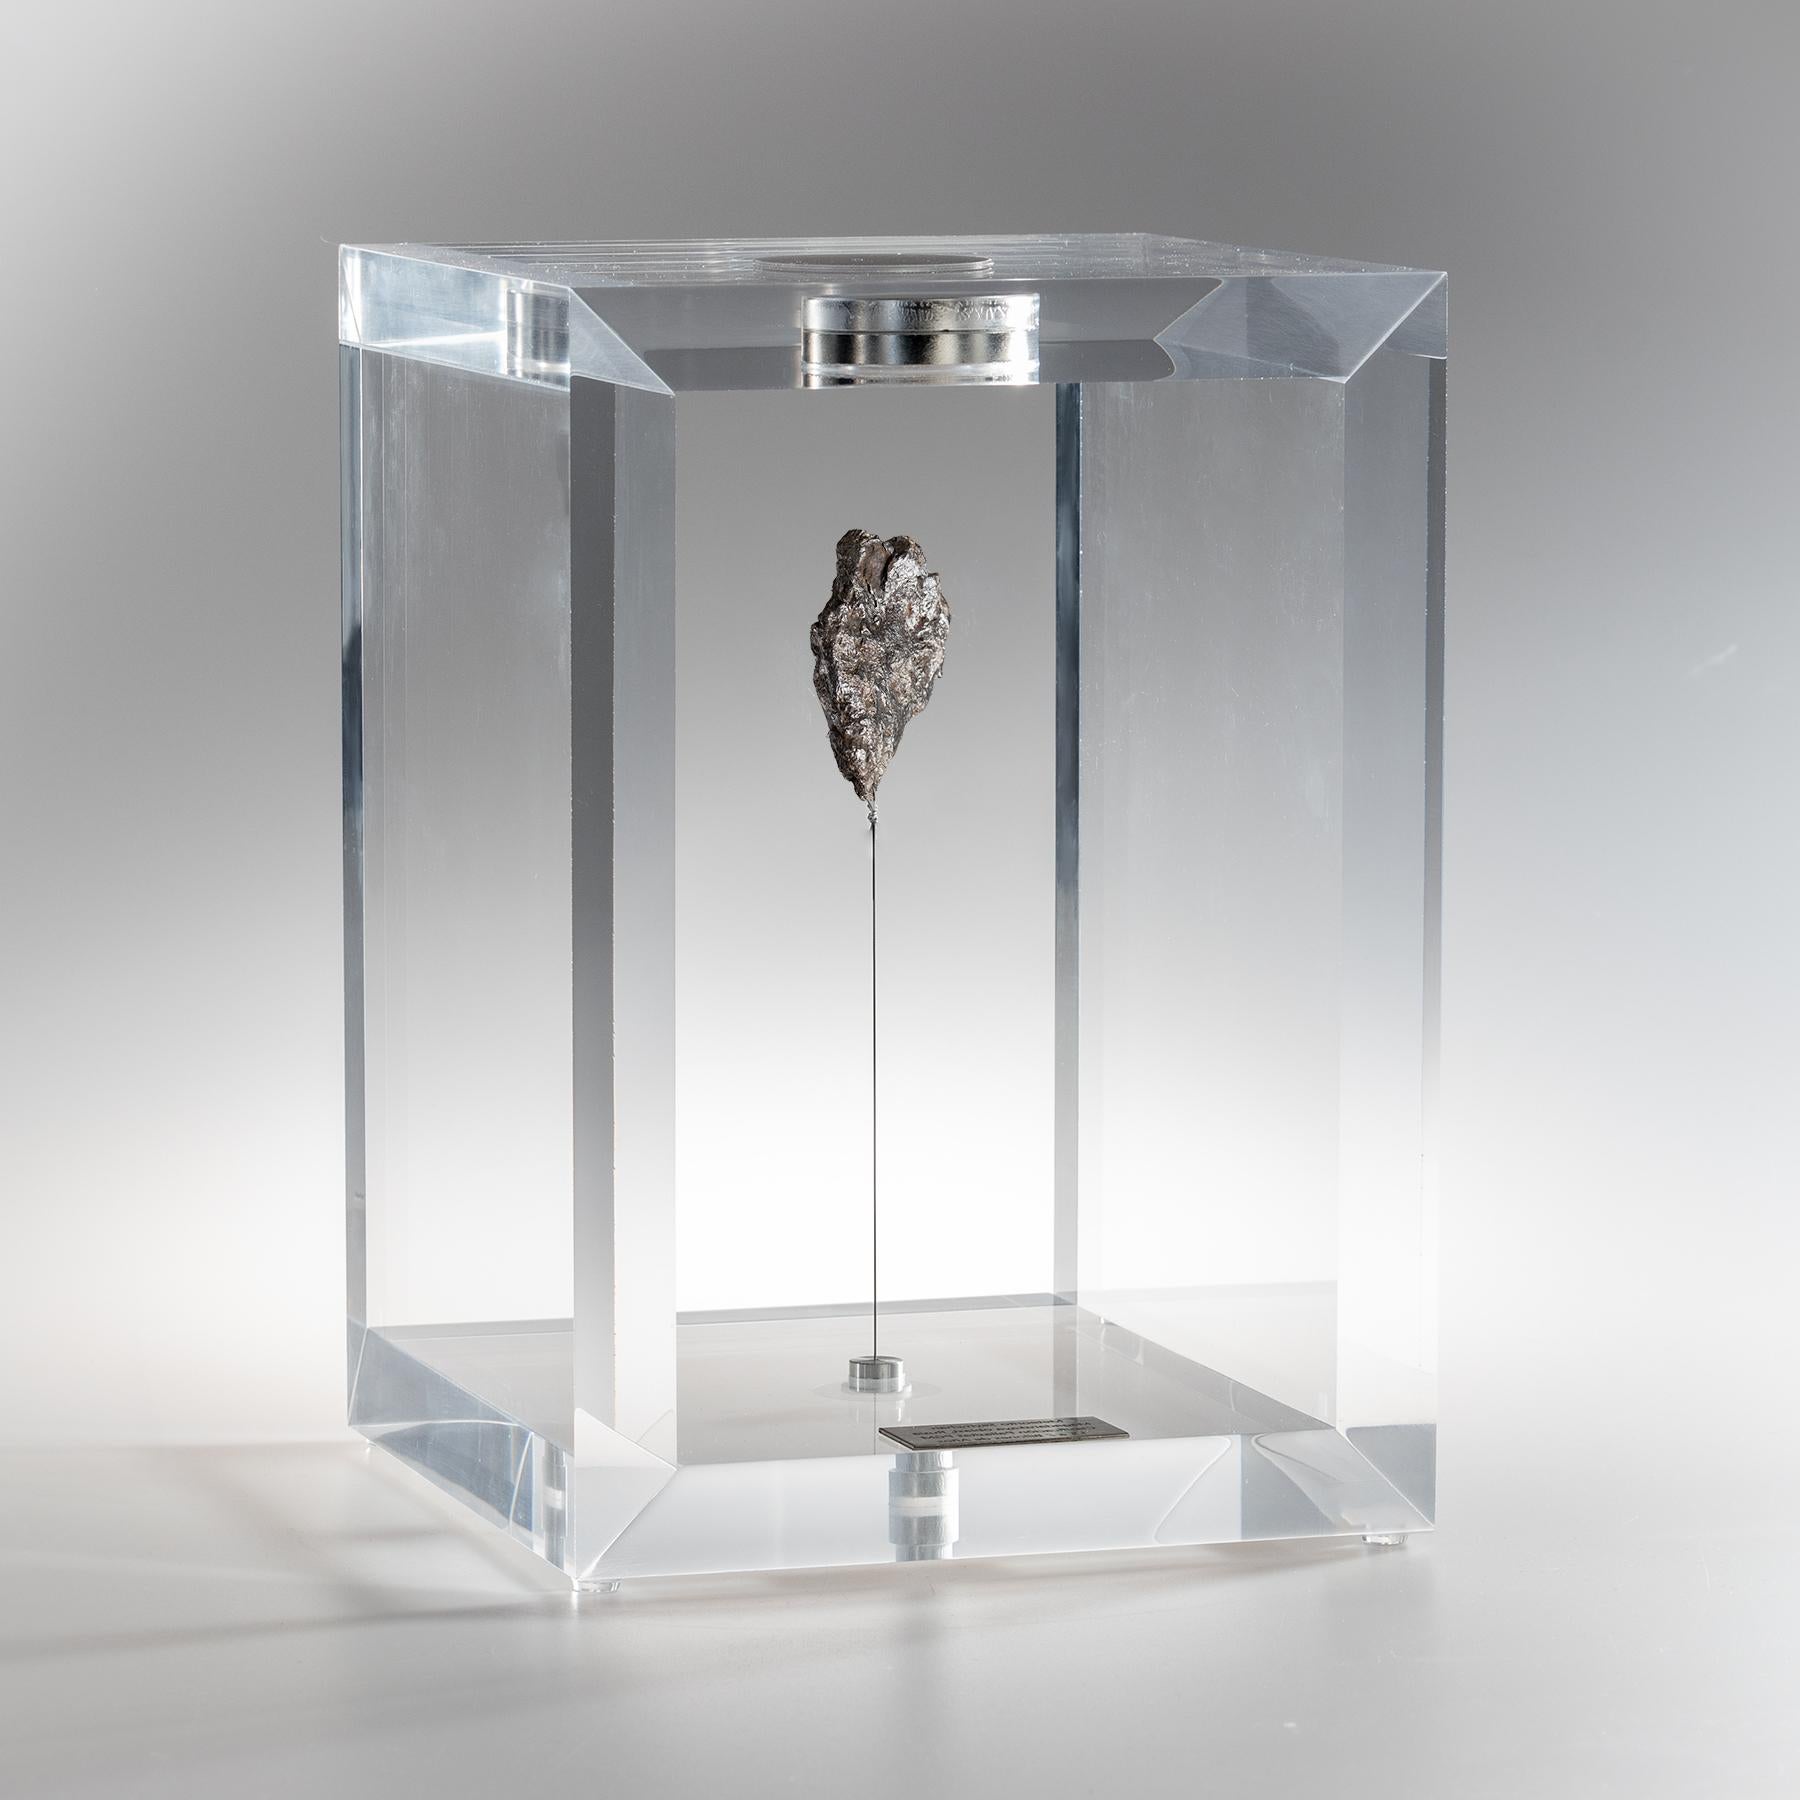 meteorite display case